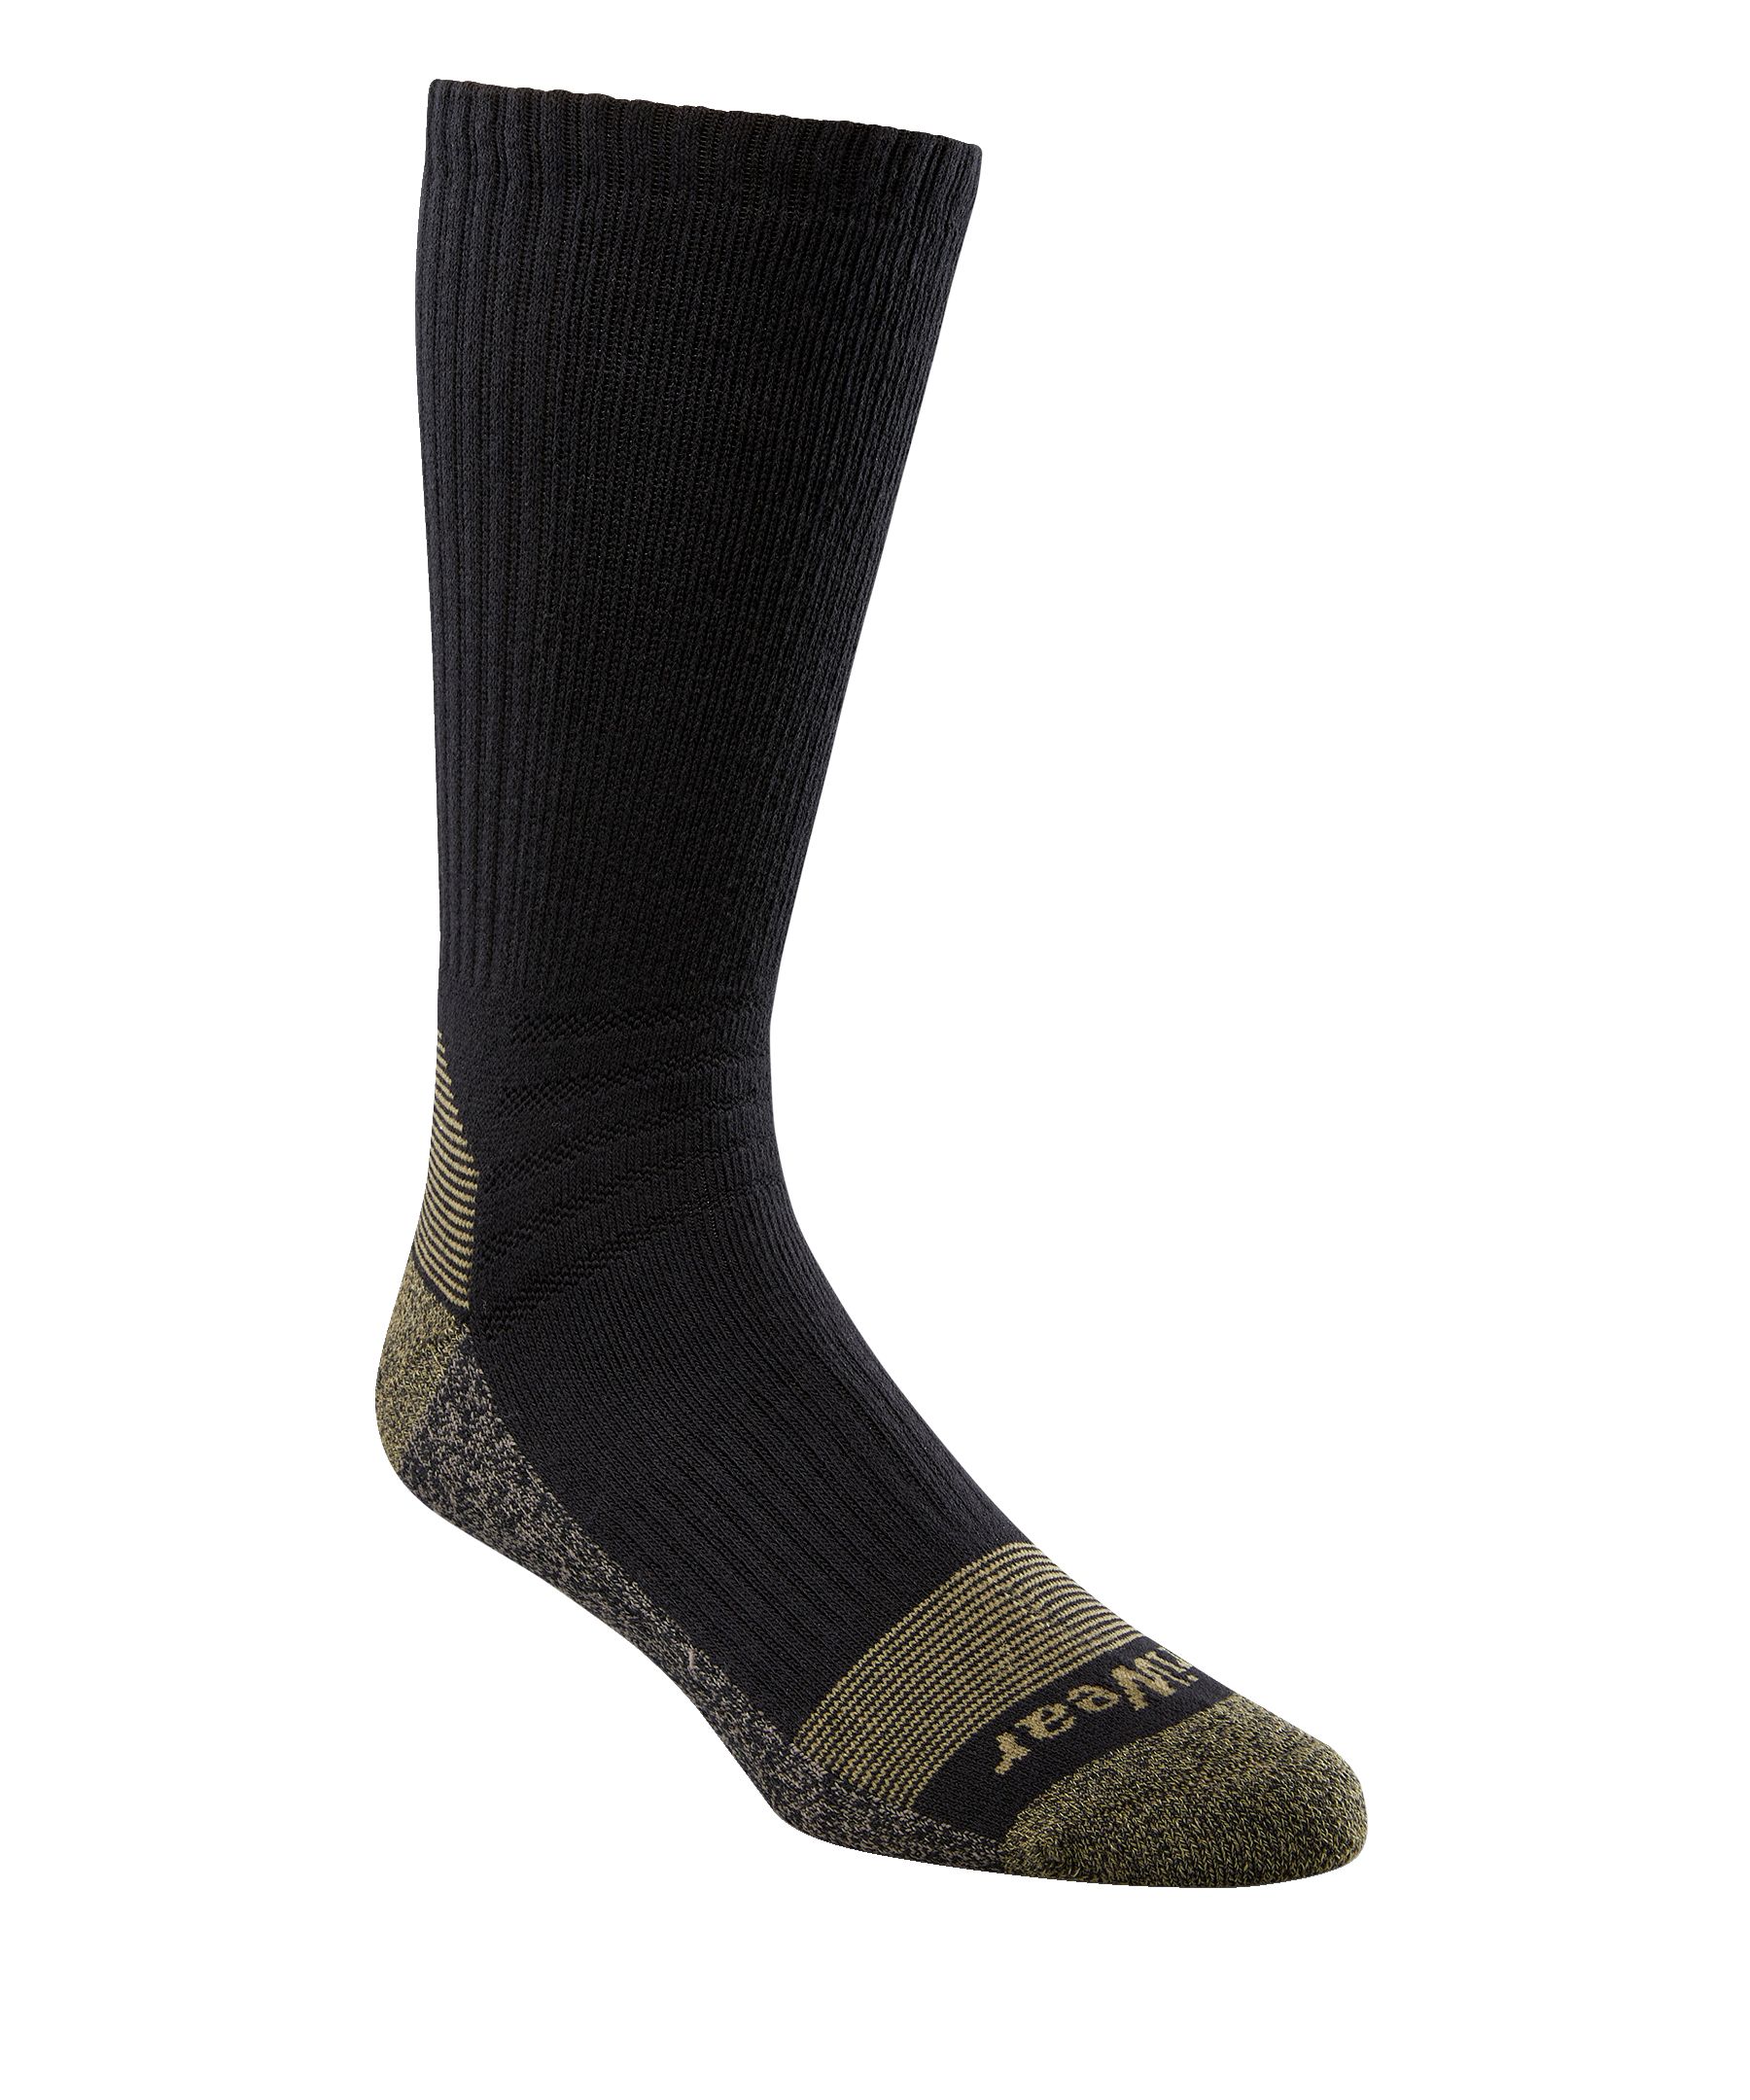 Cordura Thermal Socks